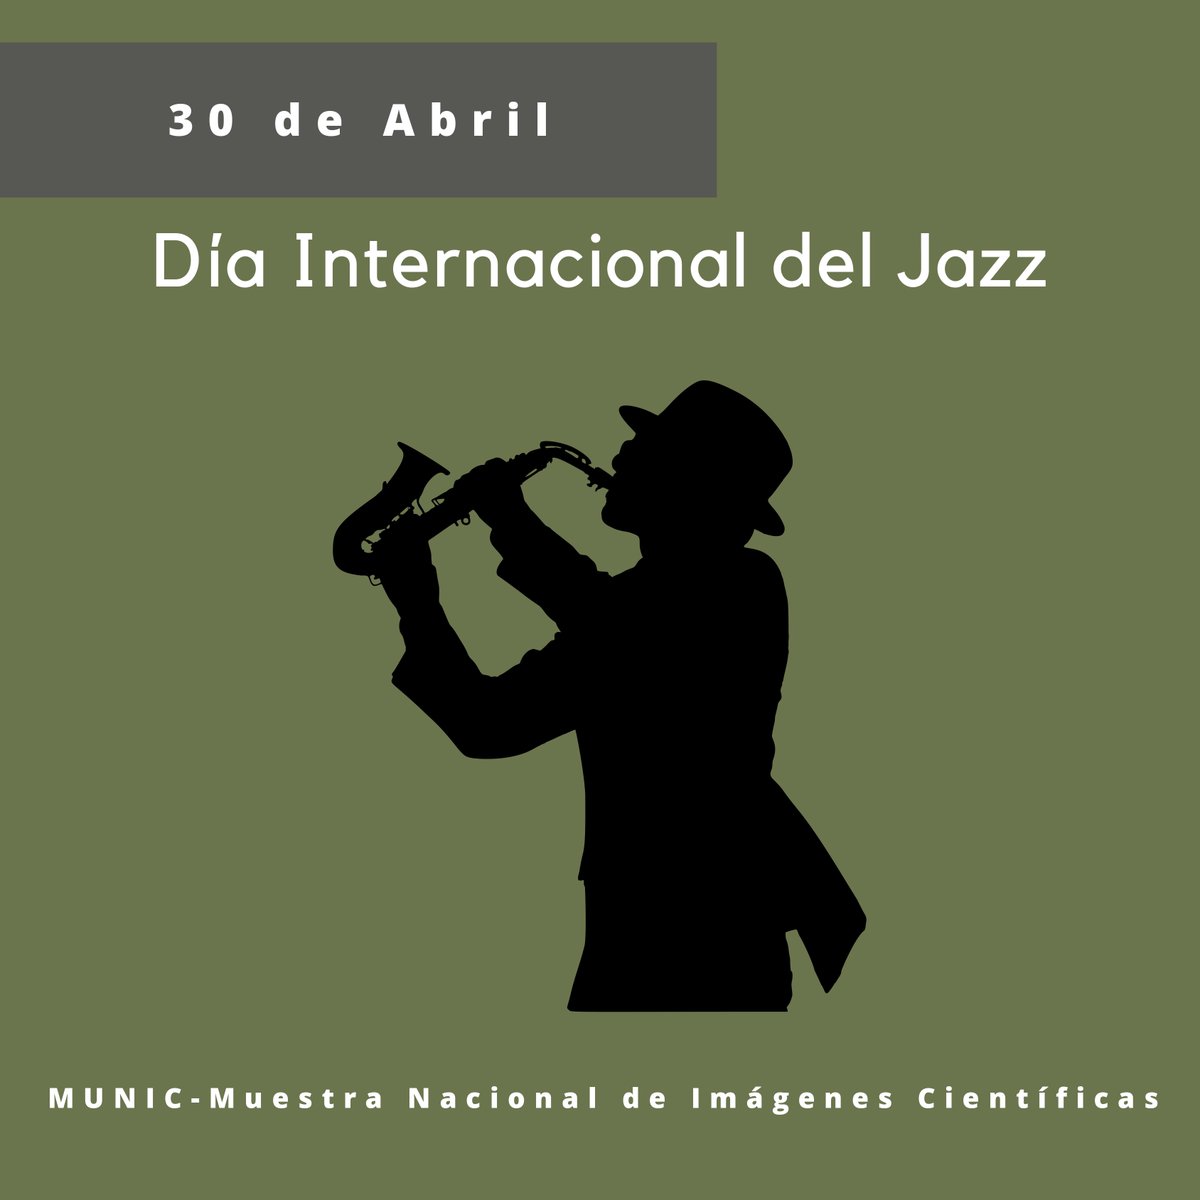 El 30 de abril es el Día Internacional del Jazz. Pretende concienciar sobre la importancia de este como herramienta educativa y de promoción de la paz, el diálogo y la cooperación entre pueblos de todo el mundo. #MUNIContigo #DivulgaciondelaCiencia #DíaInternacionaldelJazz